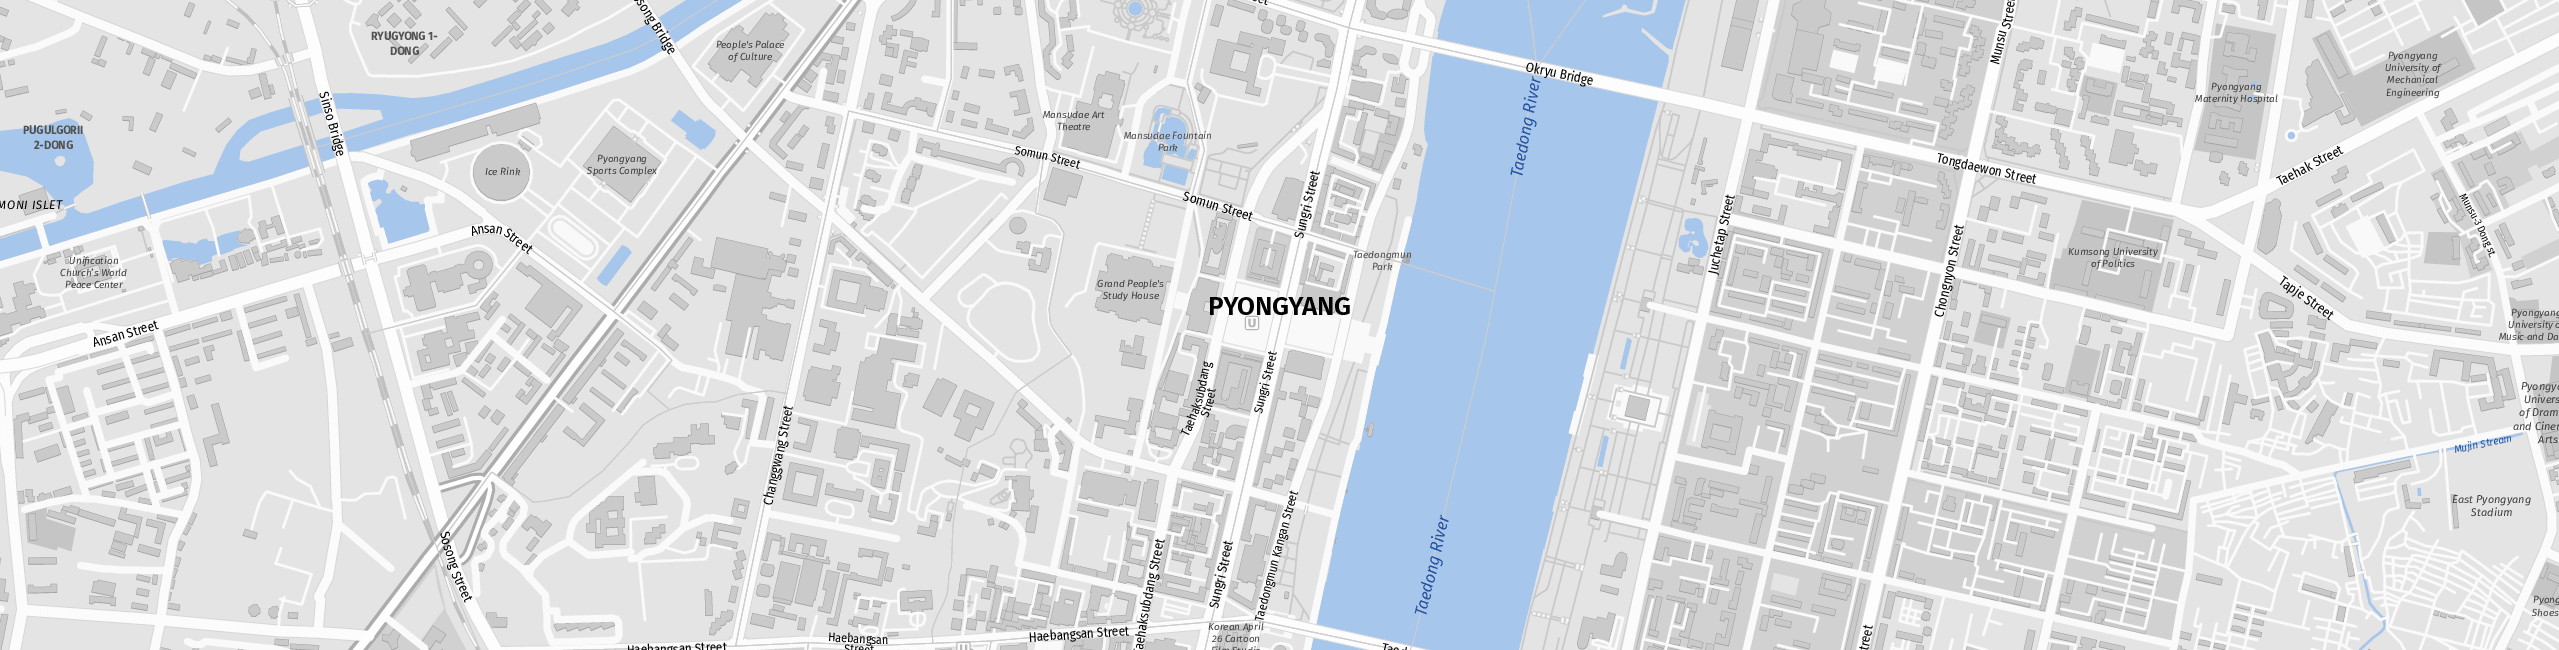 Stadtplan Pjöngjang zum Downloaden.